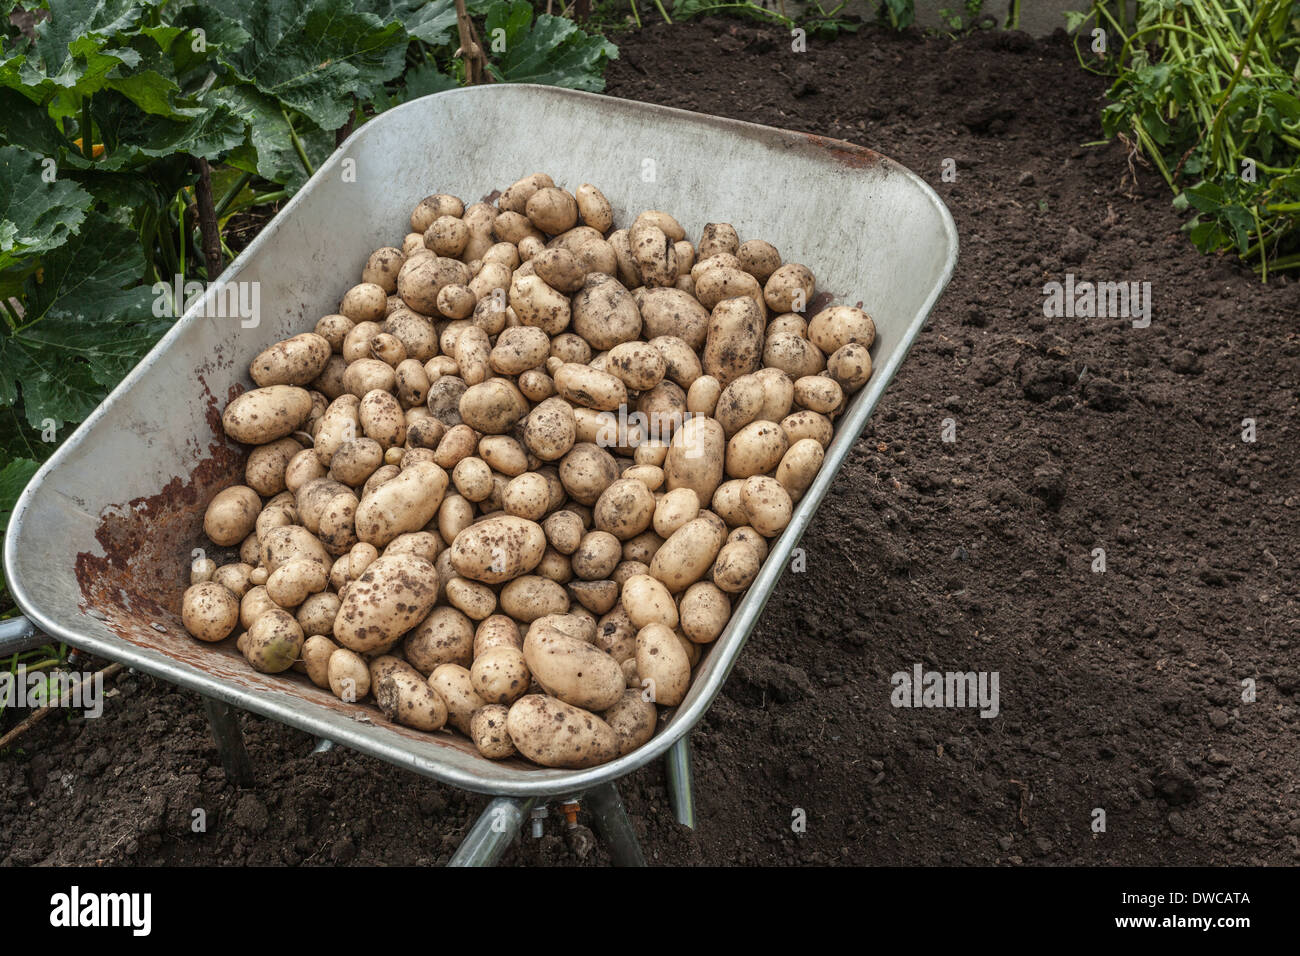 Wheelbarrow full of freshly harvested potatoes Stock Photo